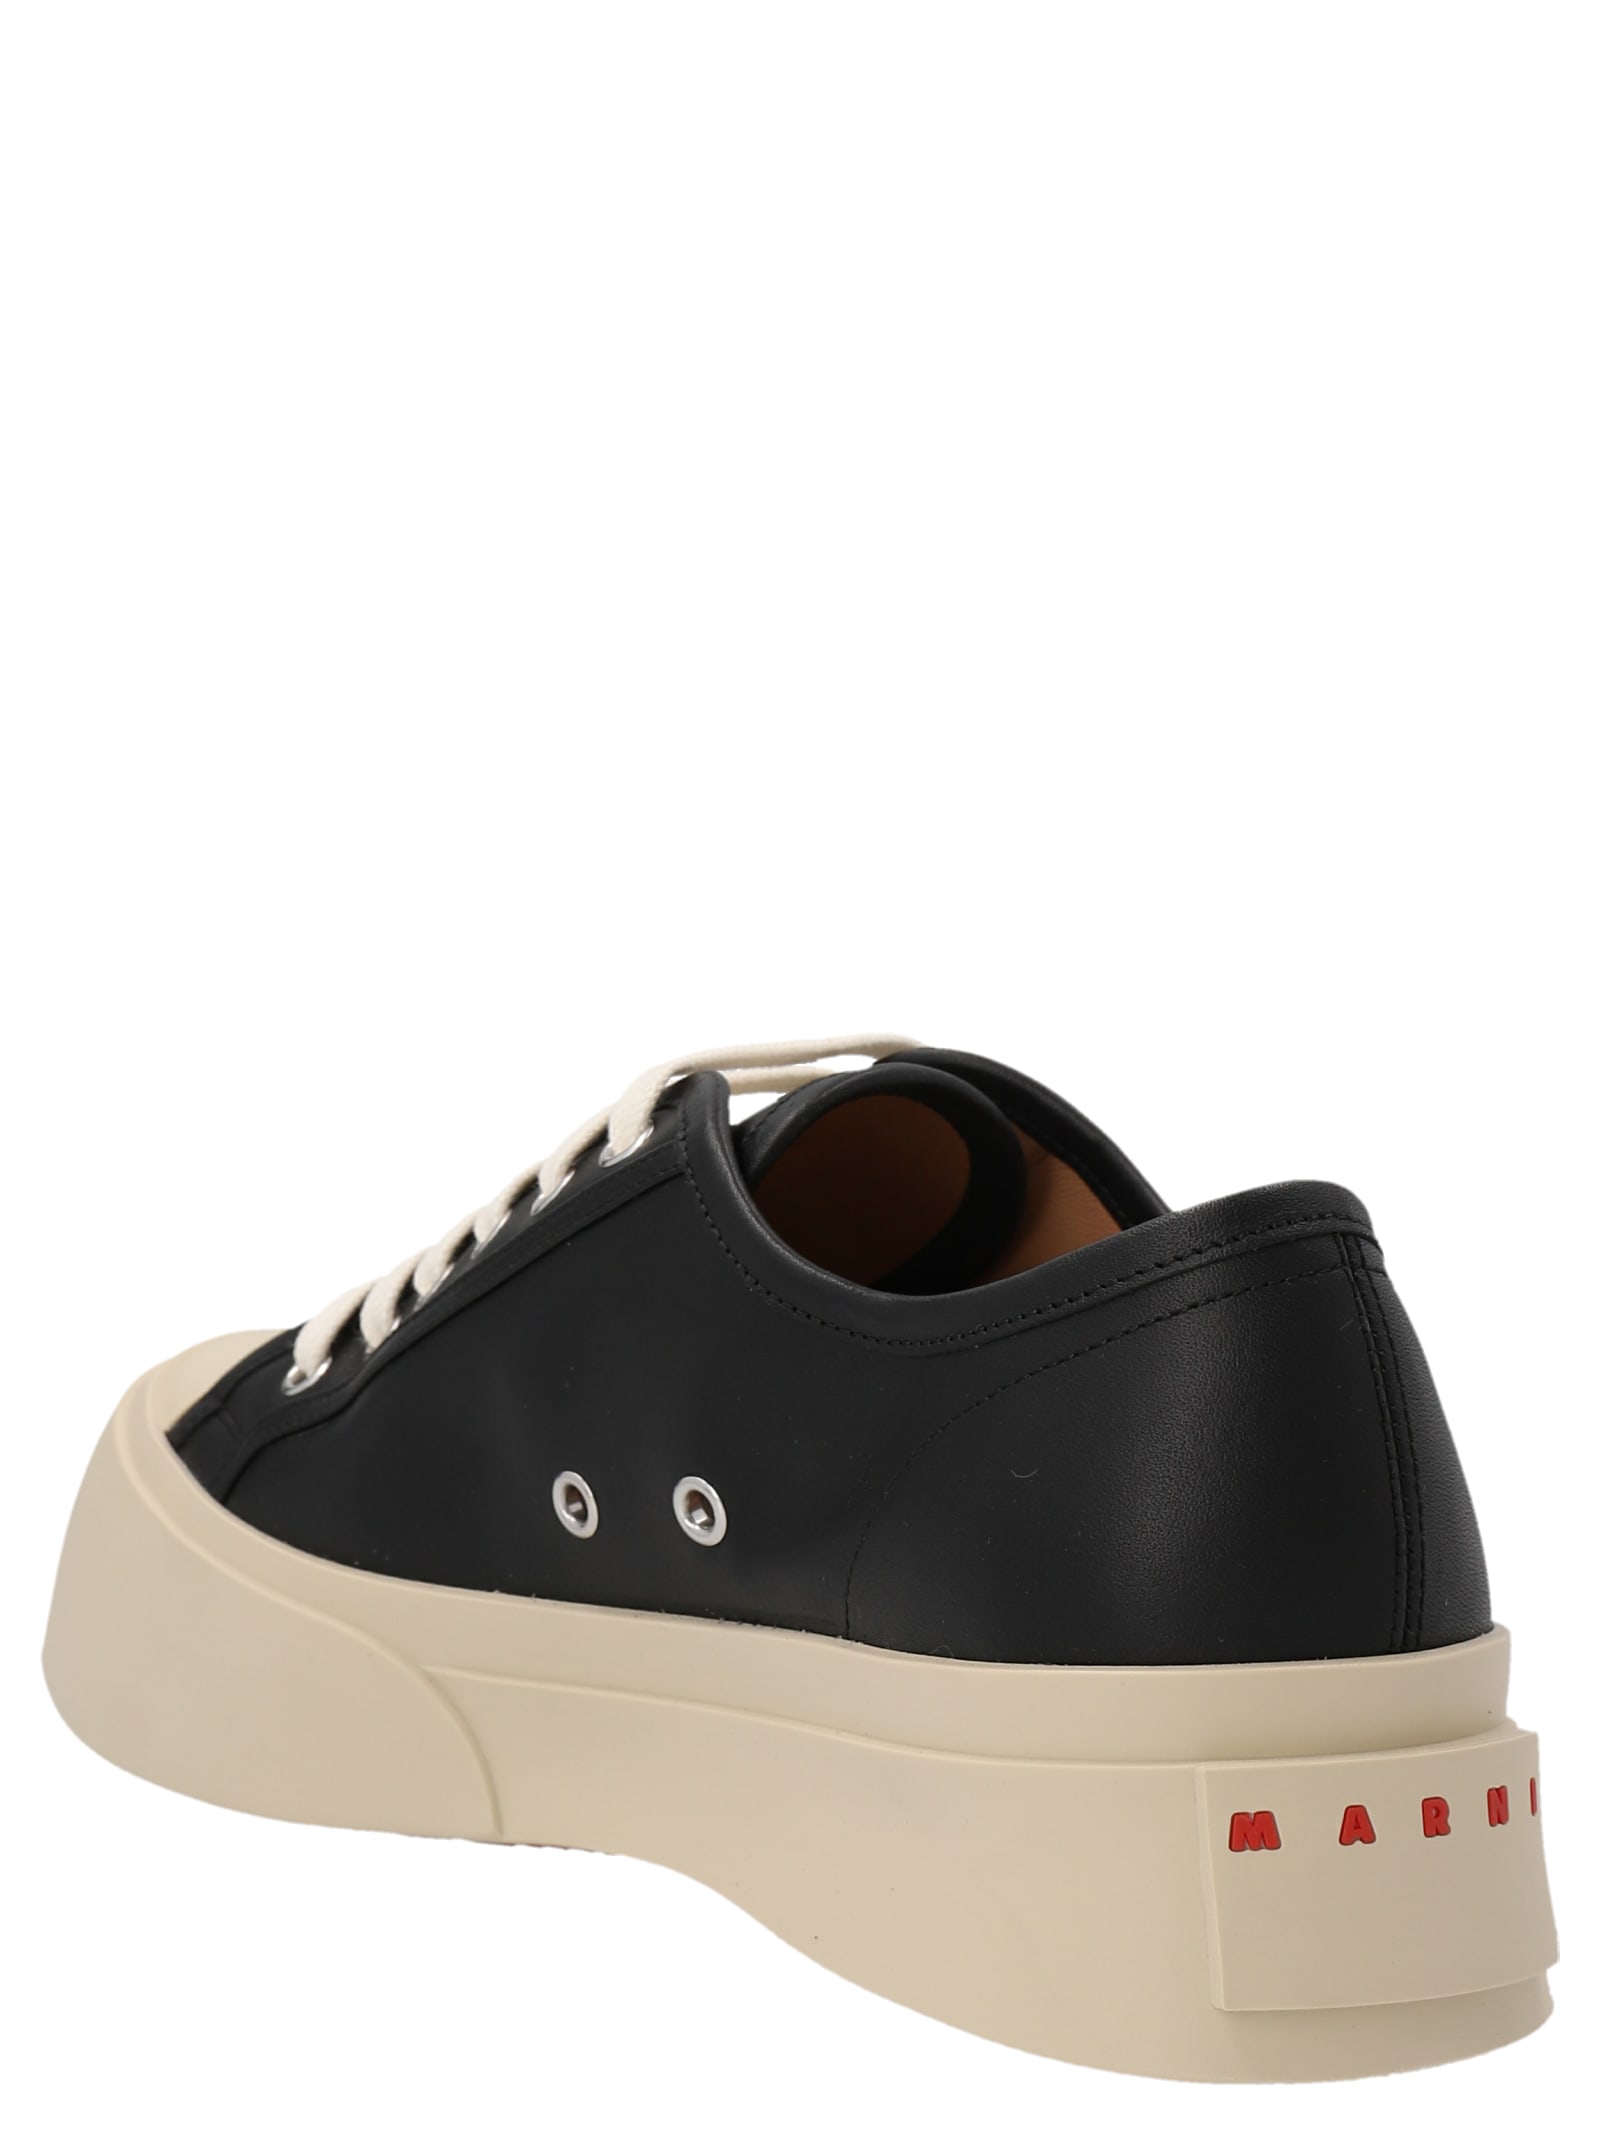 Shop Marni Pablo Sneakers In White/black